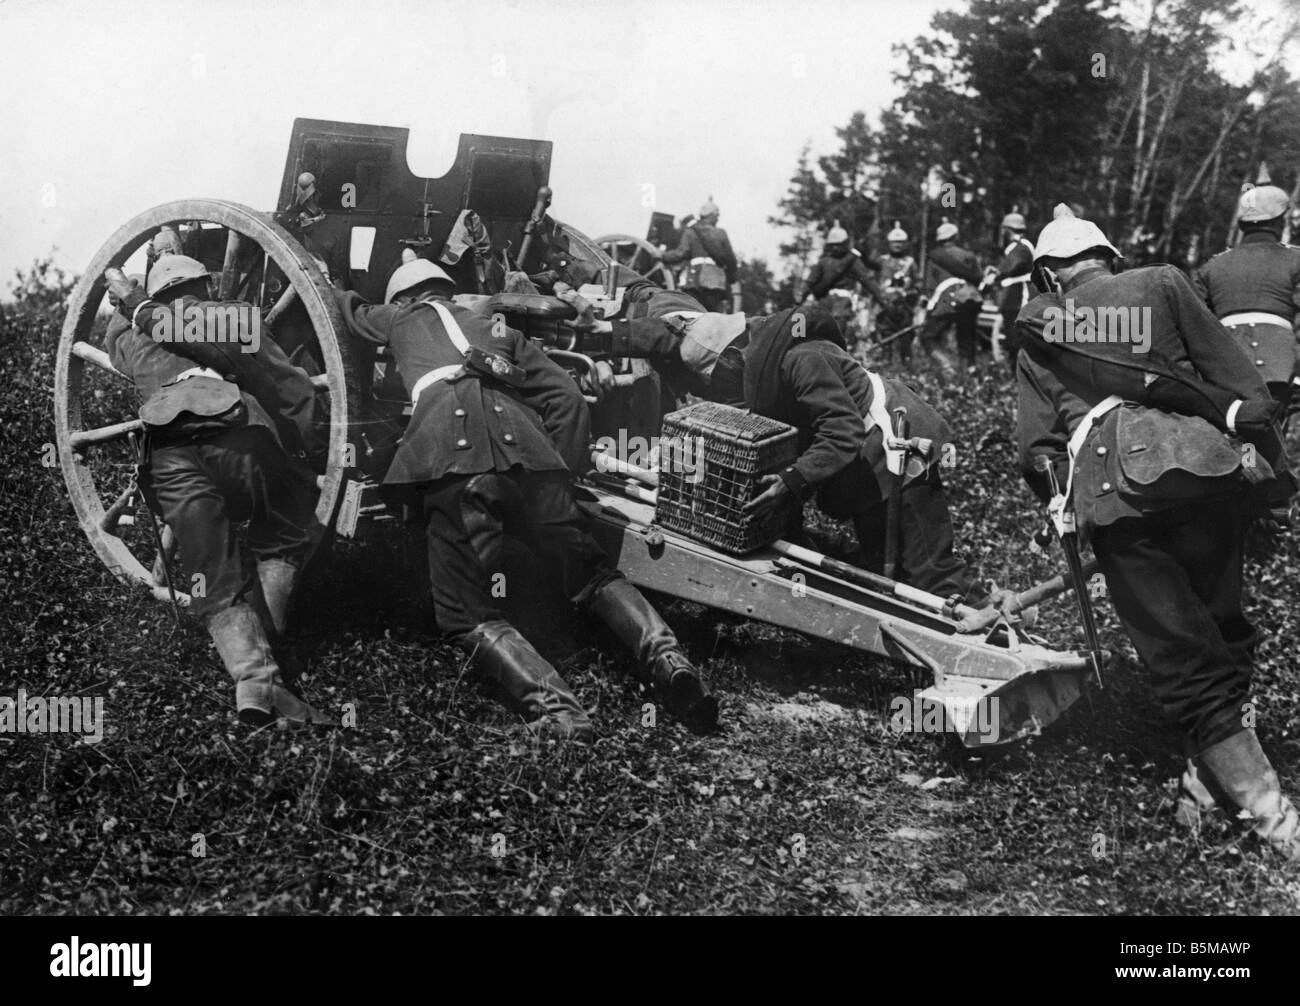 2 M65 F1 1913 Artillerie in Kampfposition Foto militärische Waffen Feld Haubitze pro Stück der Artillerie wird in Schlacht Posi gebracht. Stockfoto